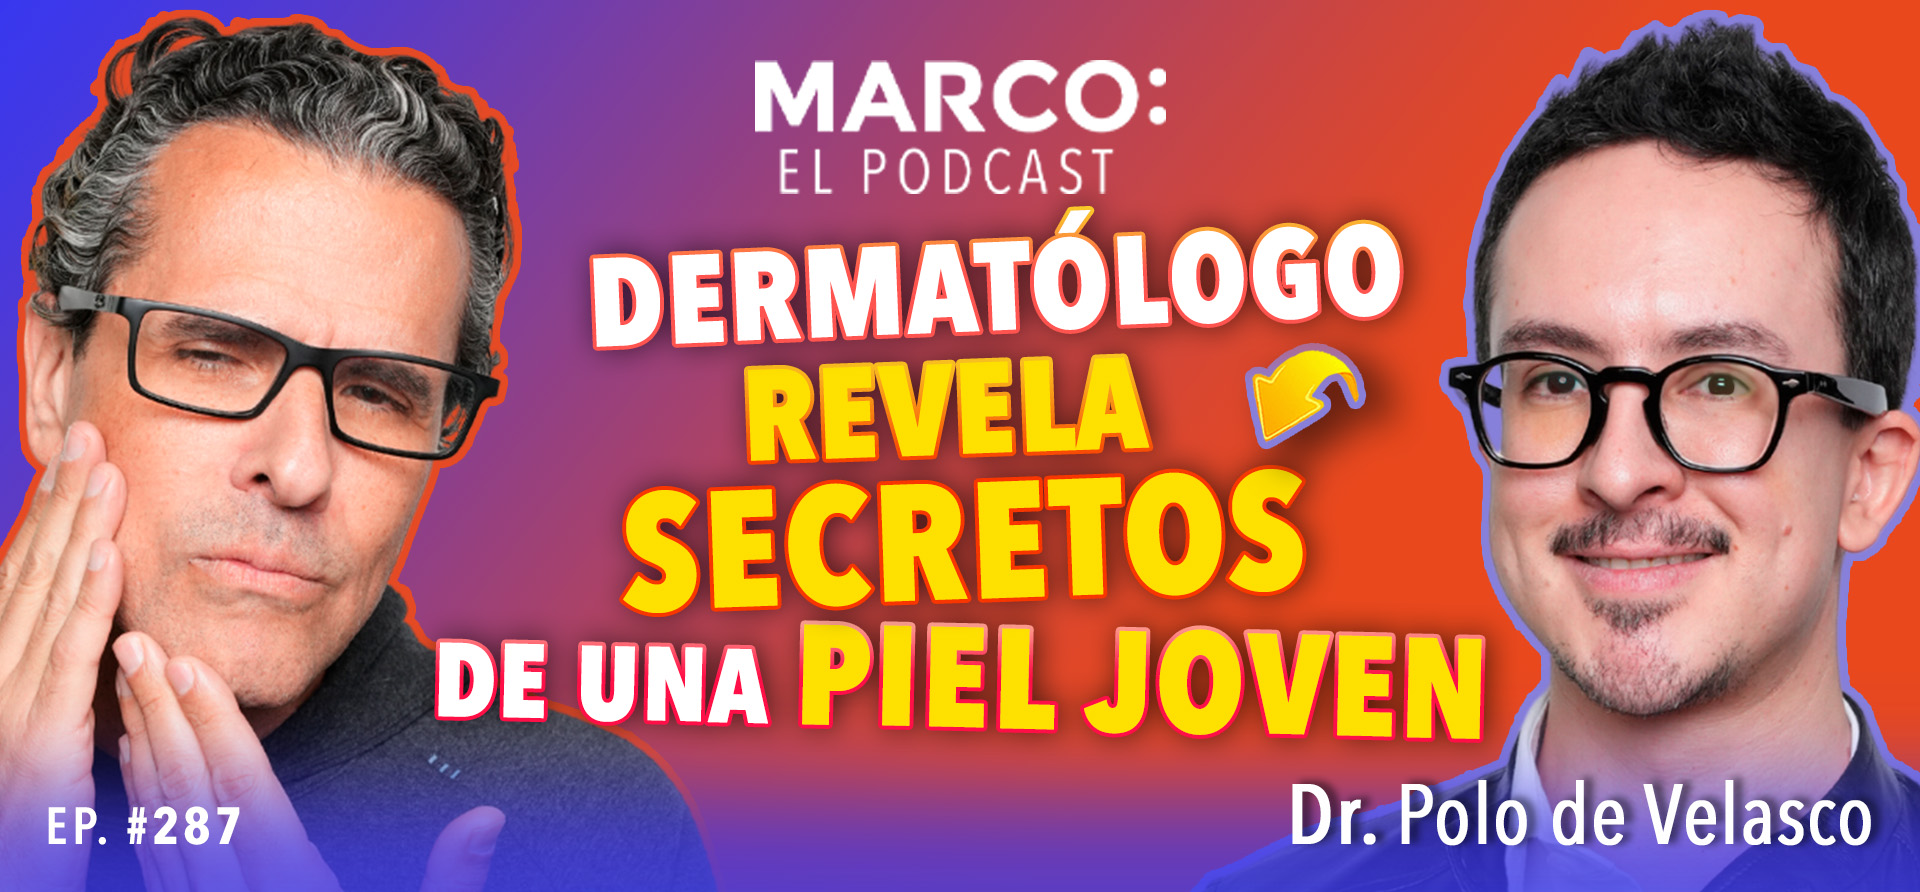 cómo suavizar arrugas Marco El podcast